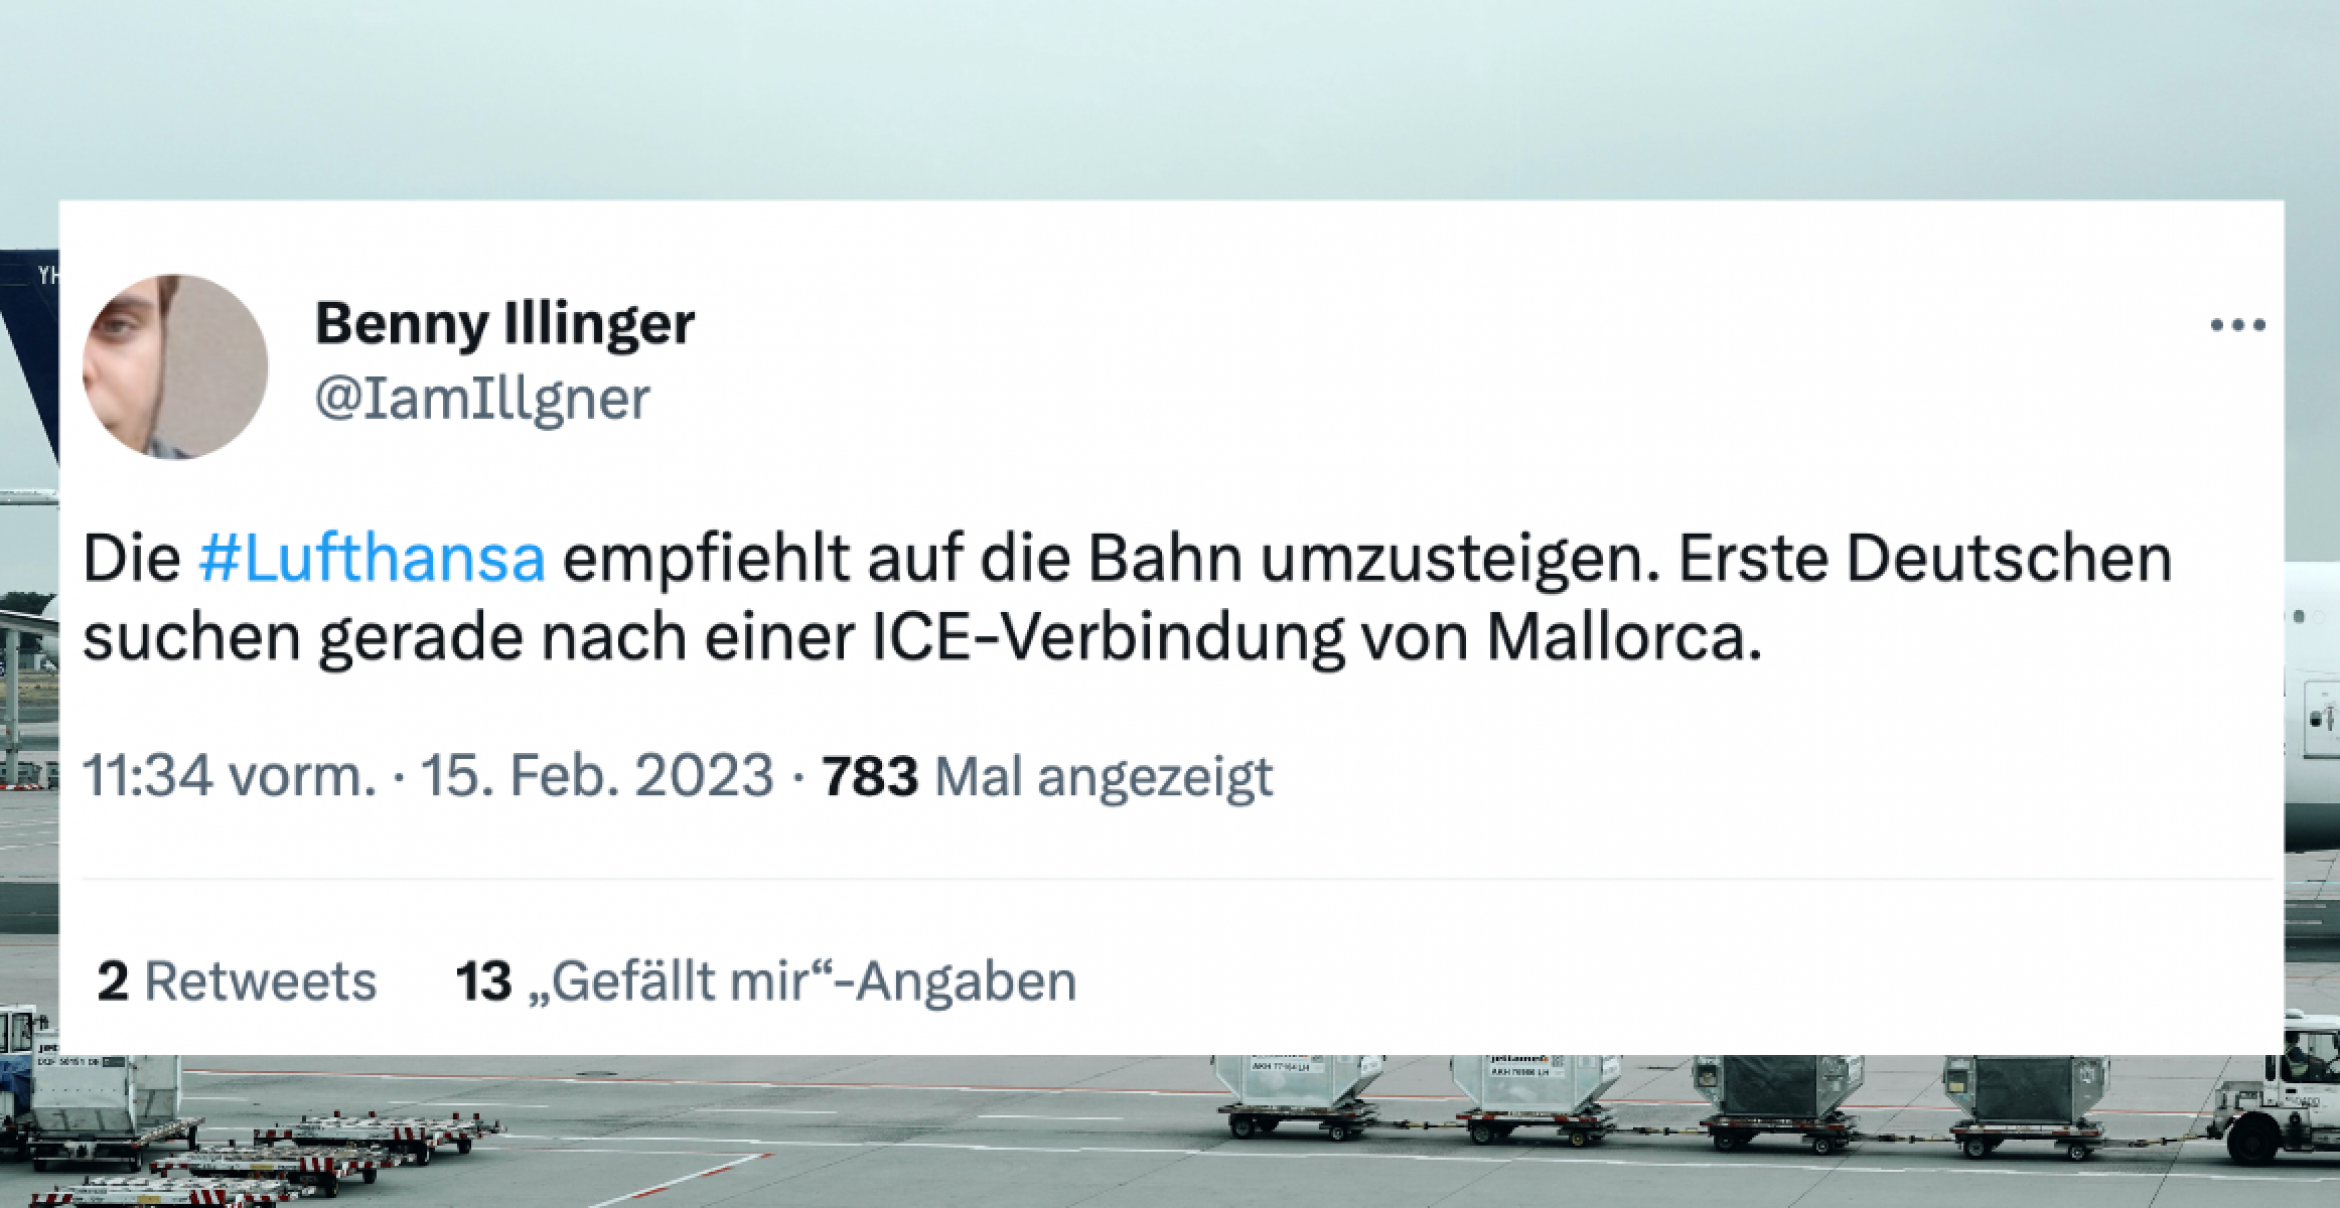 Schlimmer als die Deutsche Bahn: 12 Tweets zum Total-Ausfall bei Lufthansa